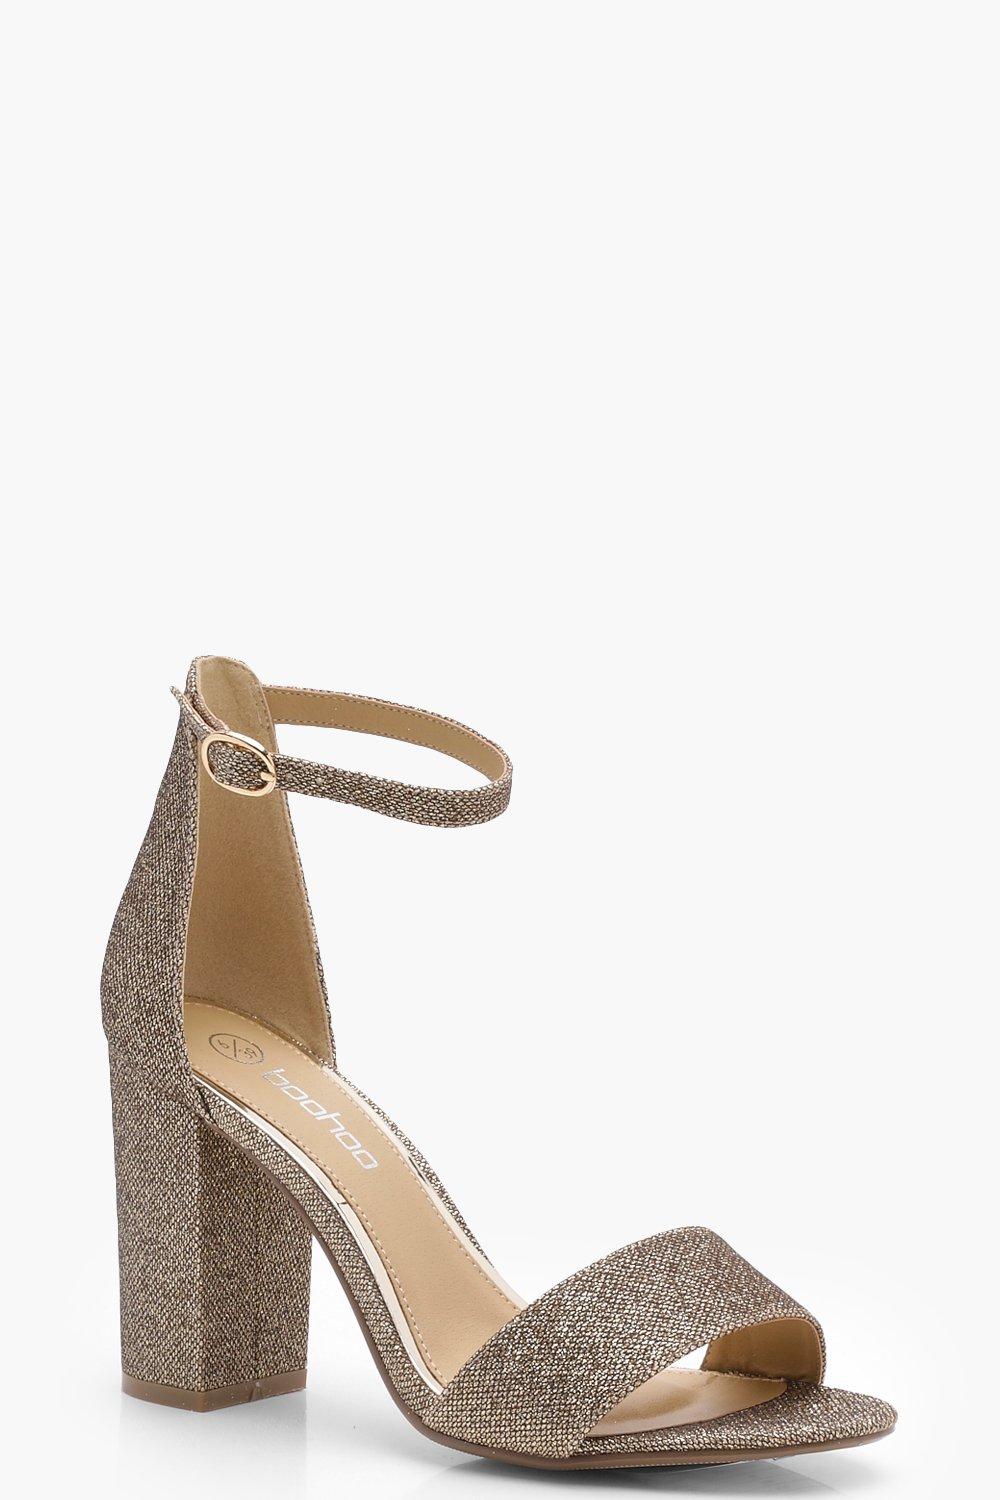 shimmer block heels